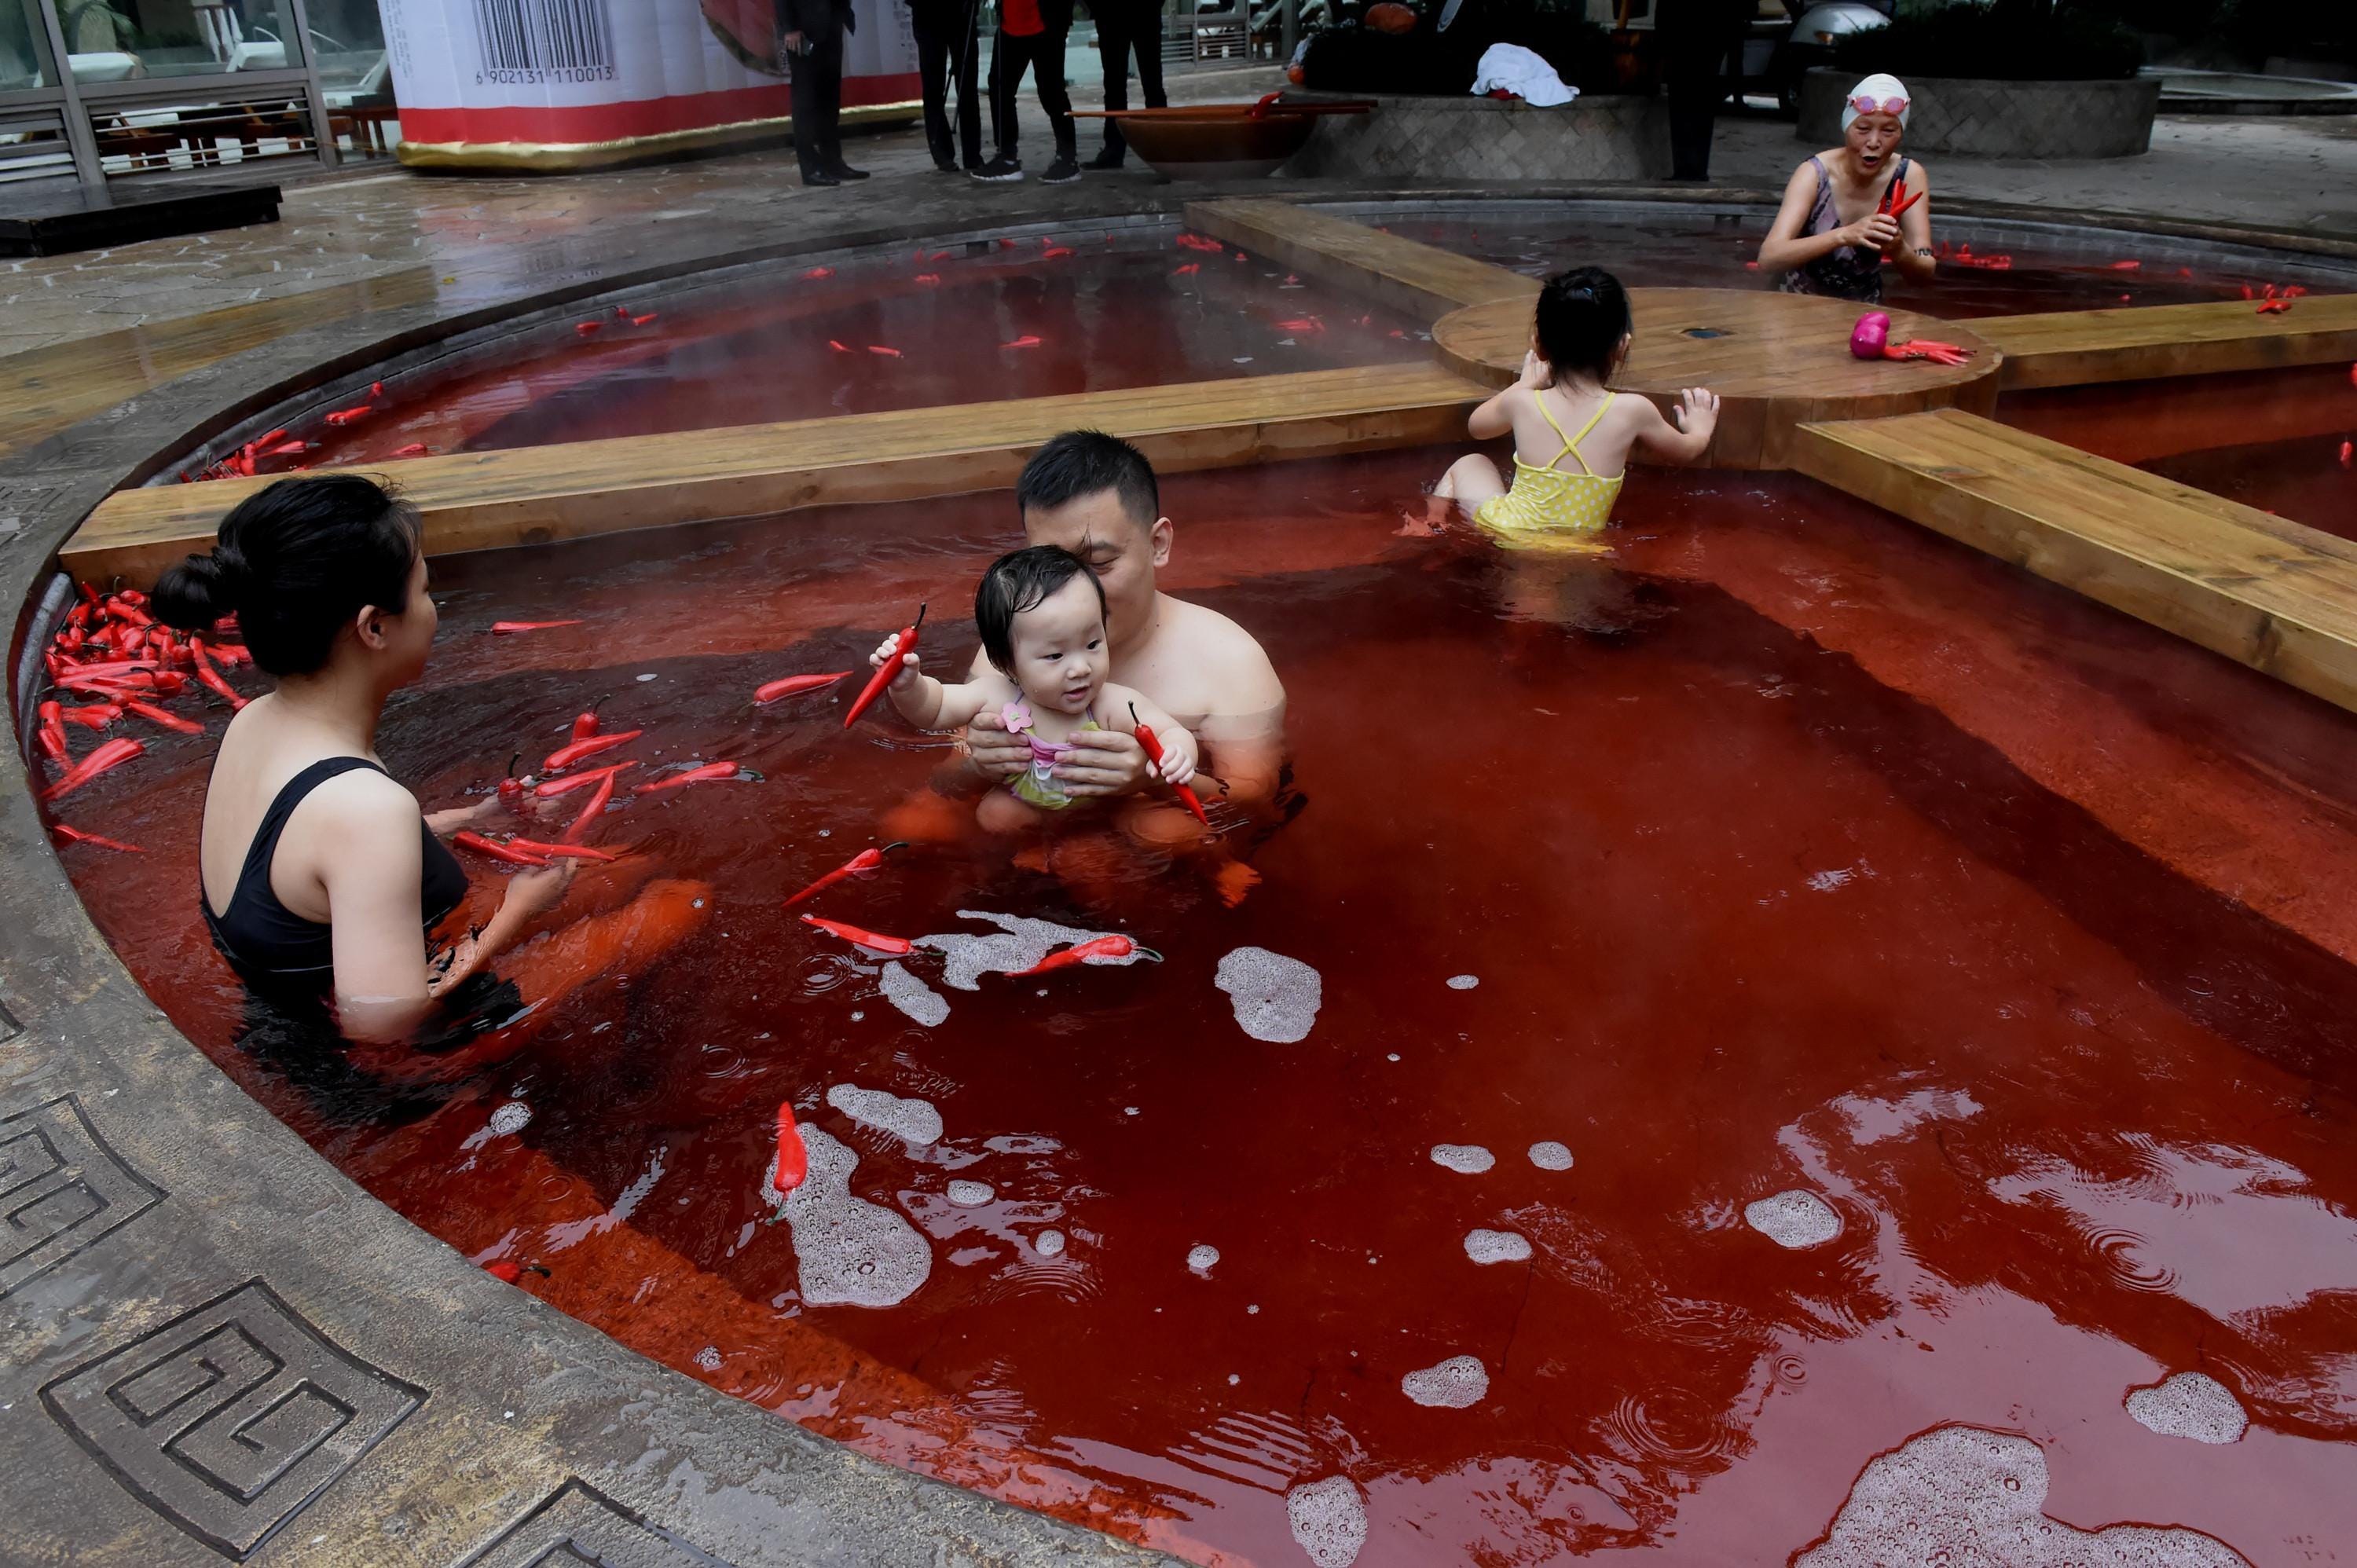 Die Bürger baden im Chongqing Ronghui Hot Spring Resort in einer roten heißen Quelle in Form eines riesigen heißen Topfes aus Kräutern der traditionellen chinesischen Medizin und Rotwein.